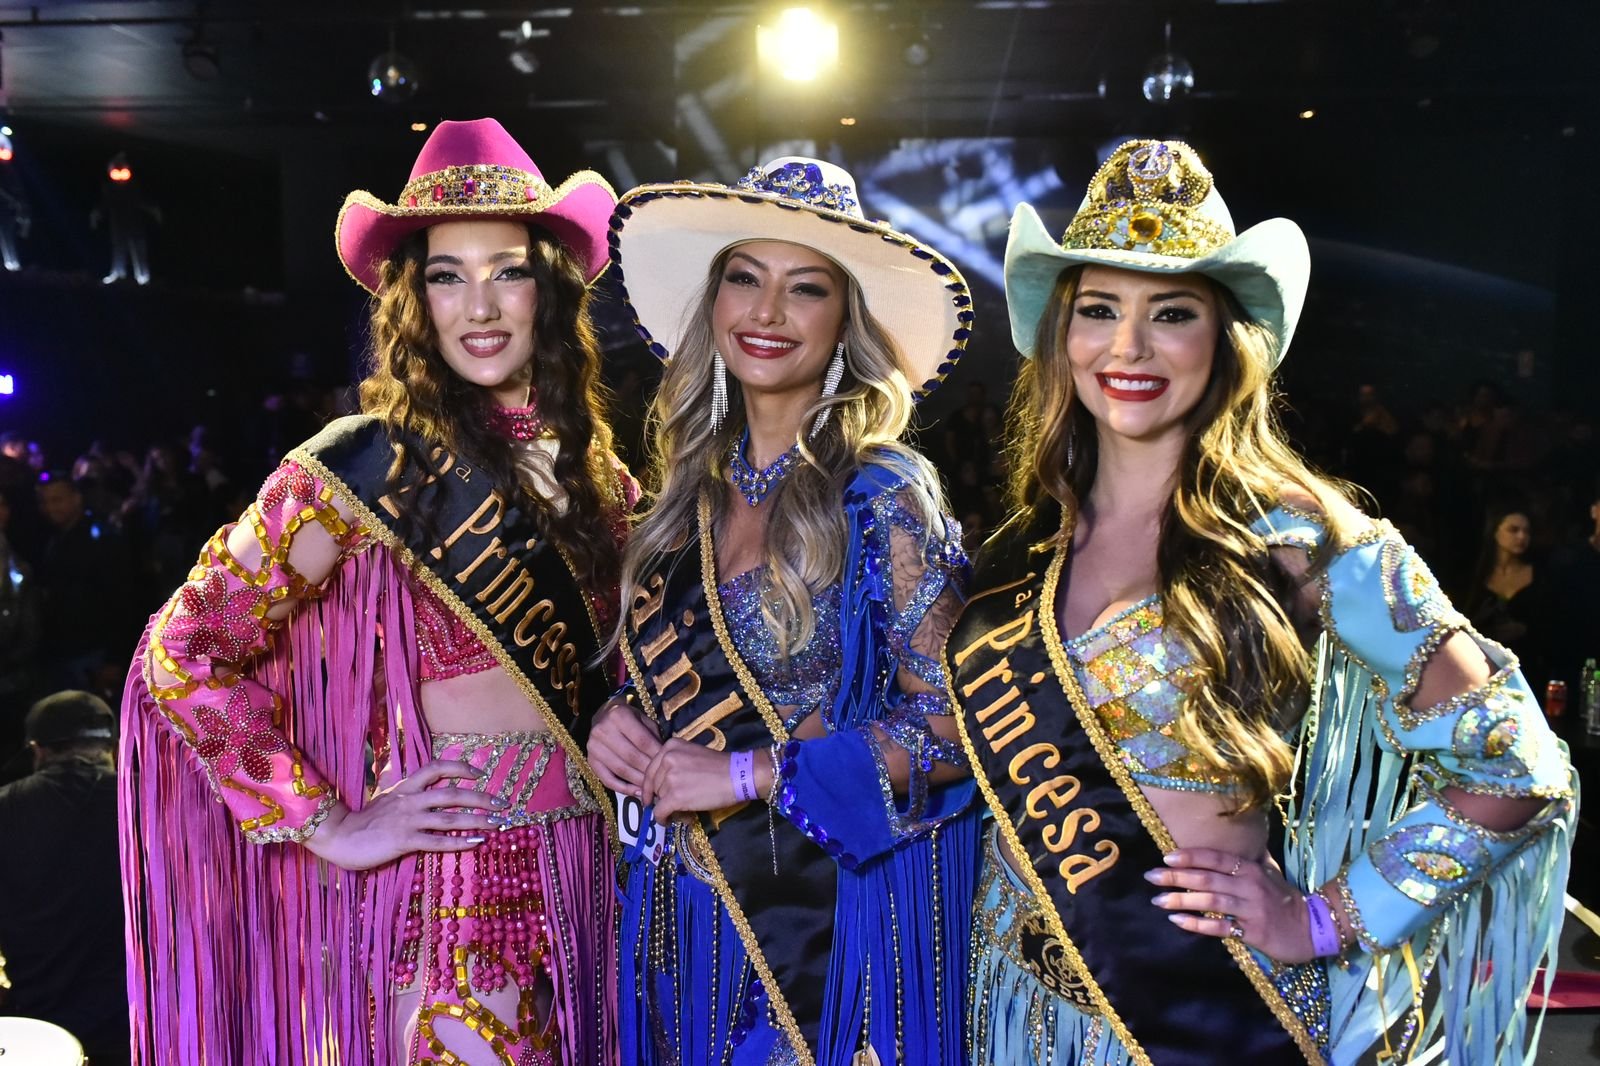 Jaguariúna Rodeo Festival libera acesso do público com reconhecimento  facial